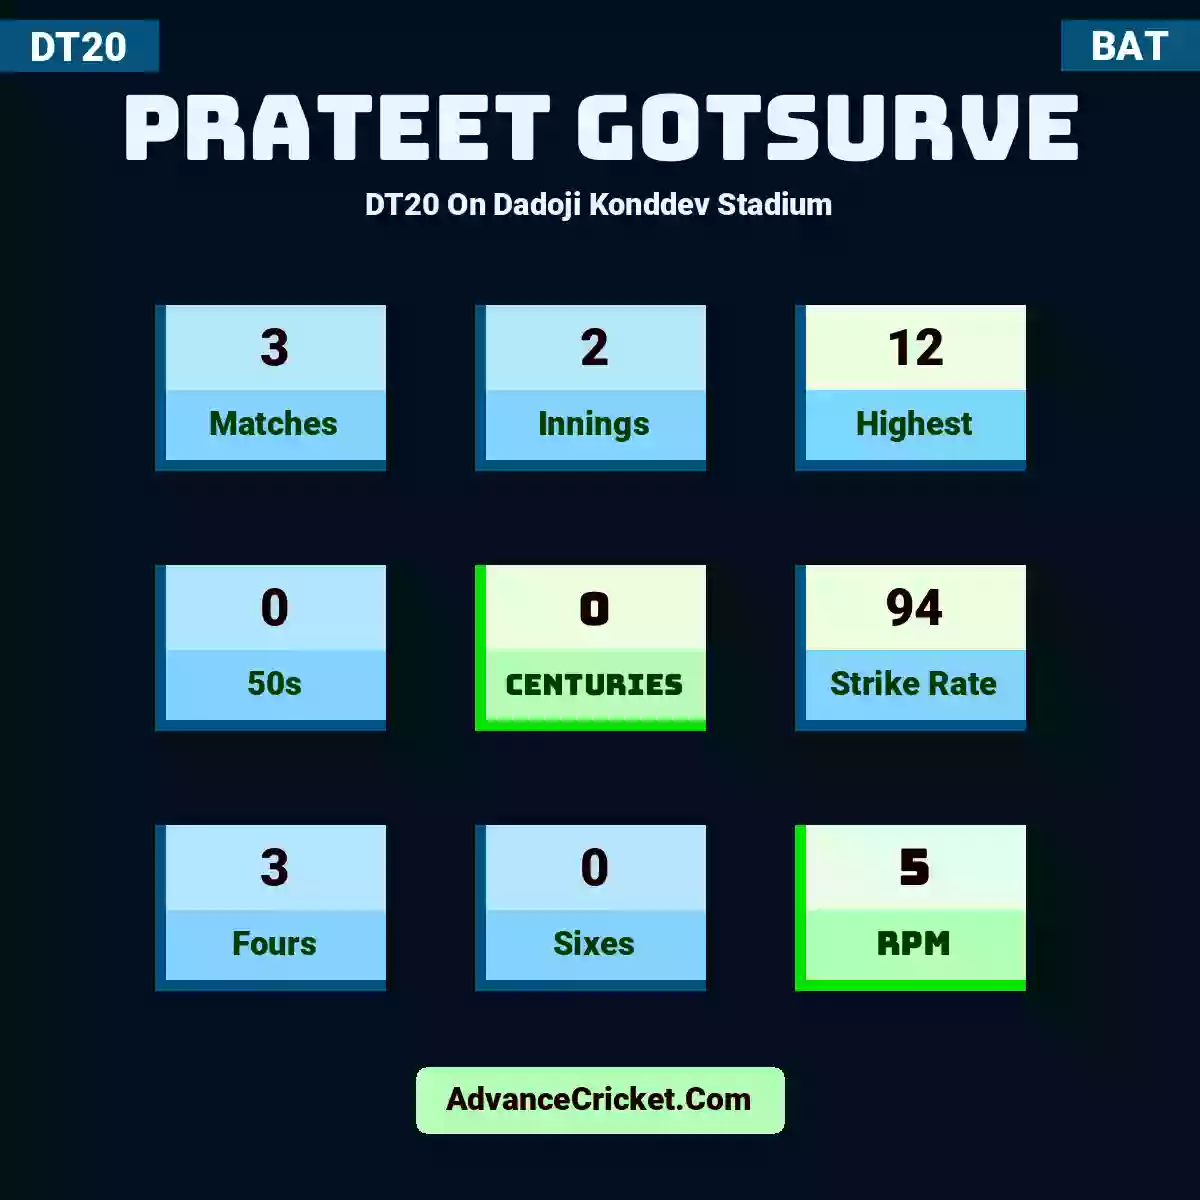 Prateet Gotsurve DT20  On Dadoji Konddev Stadium, Prateet Gotsurve played 3 matches, scored 12 runs as highest, 0 half-centuries, and 0 centuries, with a strike rate of 94. P.Gotsurve hit 3 fours and 0 sixes, with an RPM of 5.